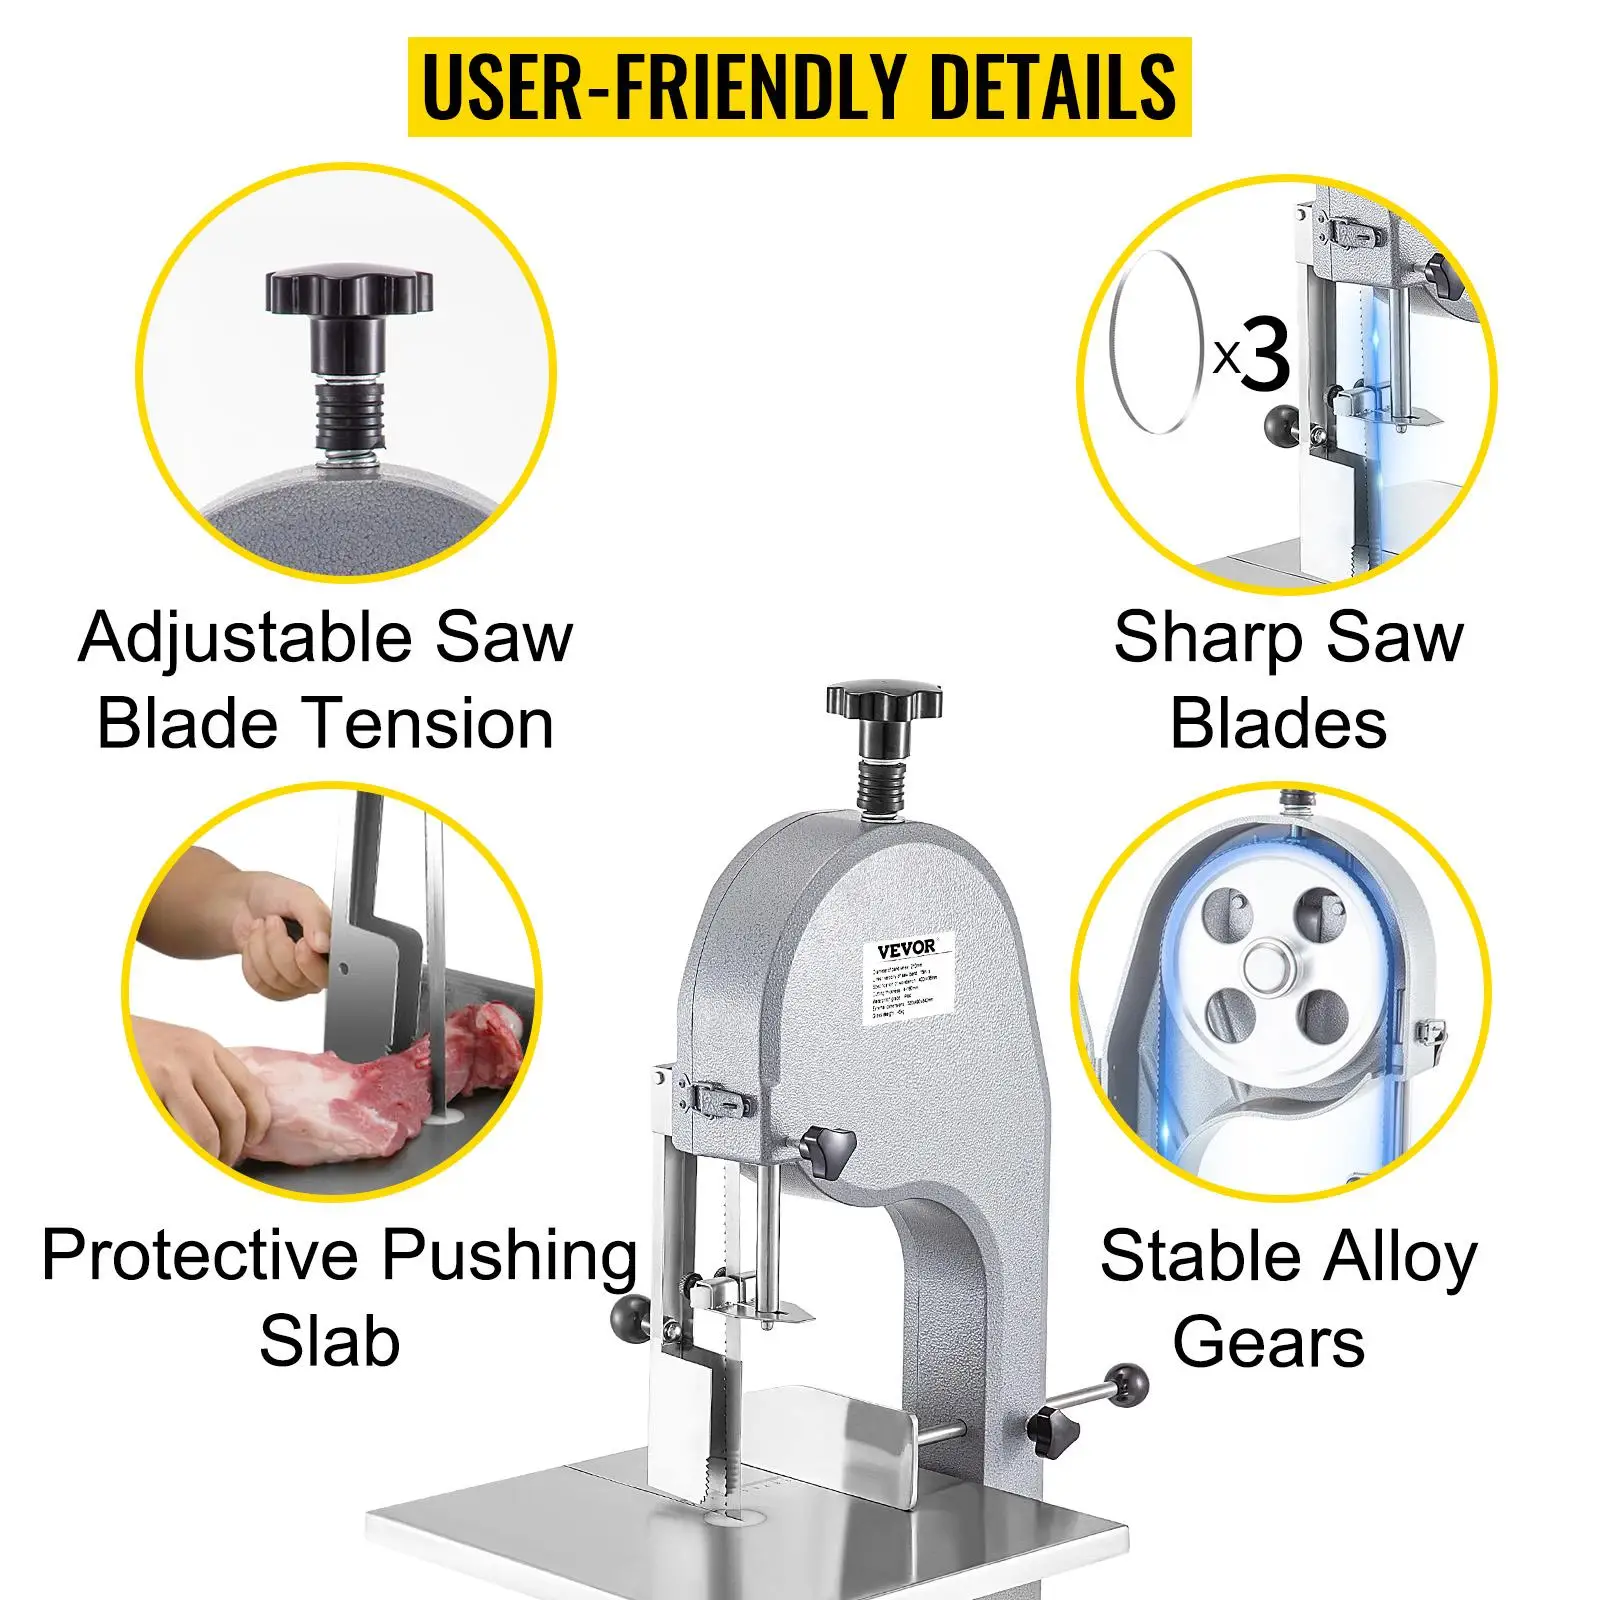 User-friendly bone saw machine